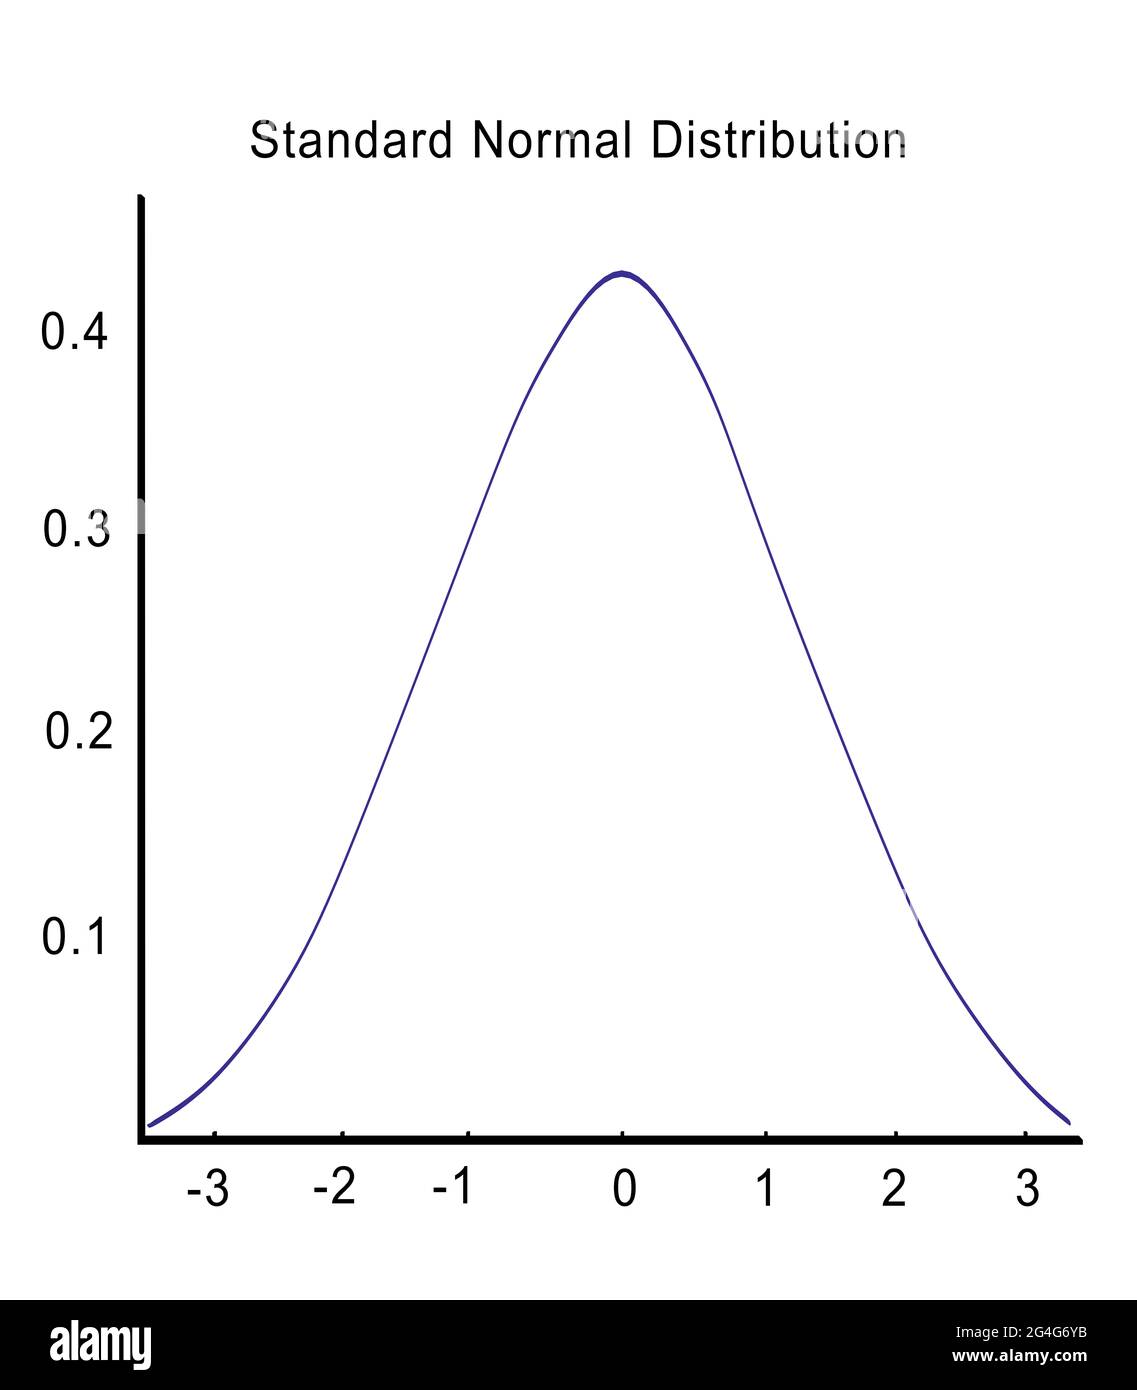 Illustrazione 3D dello script Standard Normal Distribution sopra il grafico di distribuzione normale standard, isolato su bianco. Foto Stock